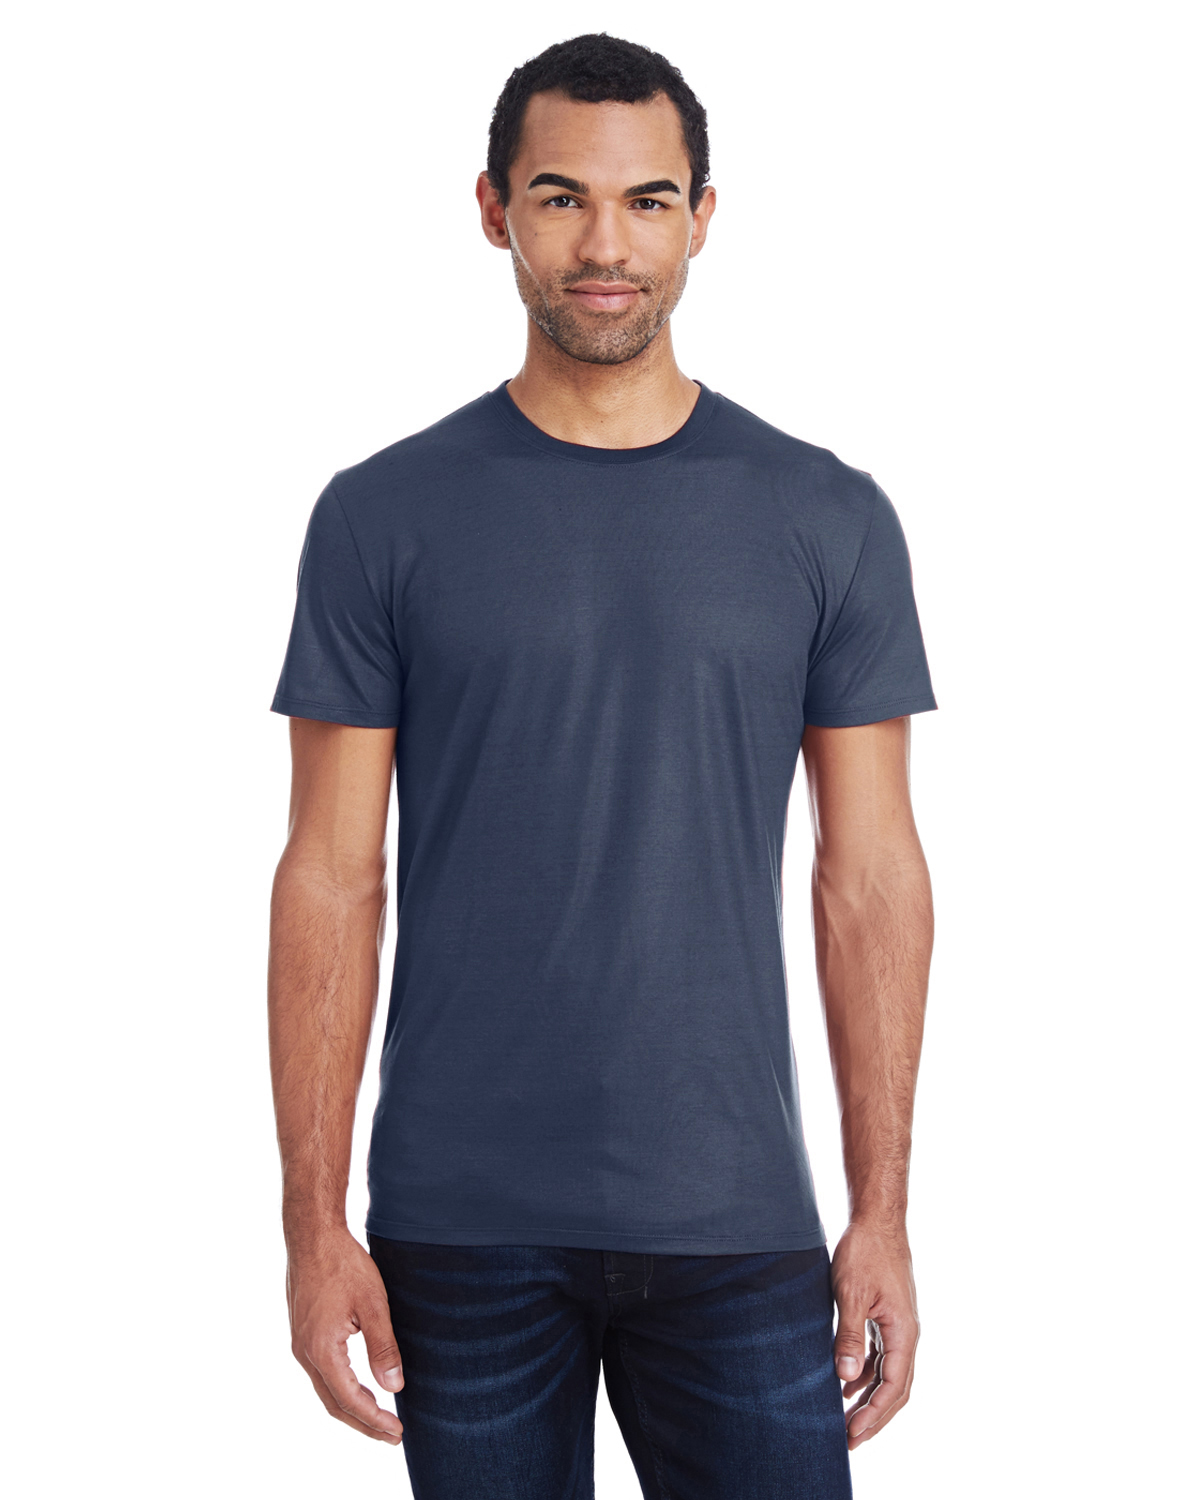 Threadfast Apparel 140A - Men's Liquid Jersey Short-Sleeve T-Shirt